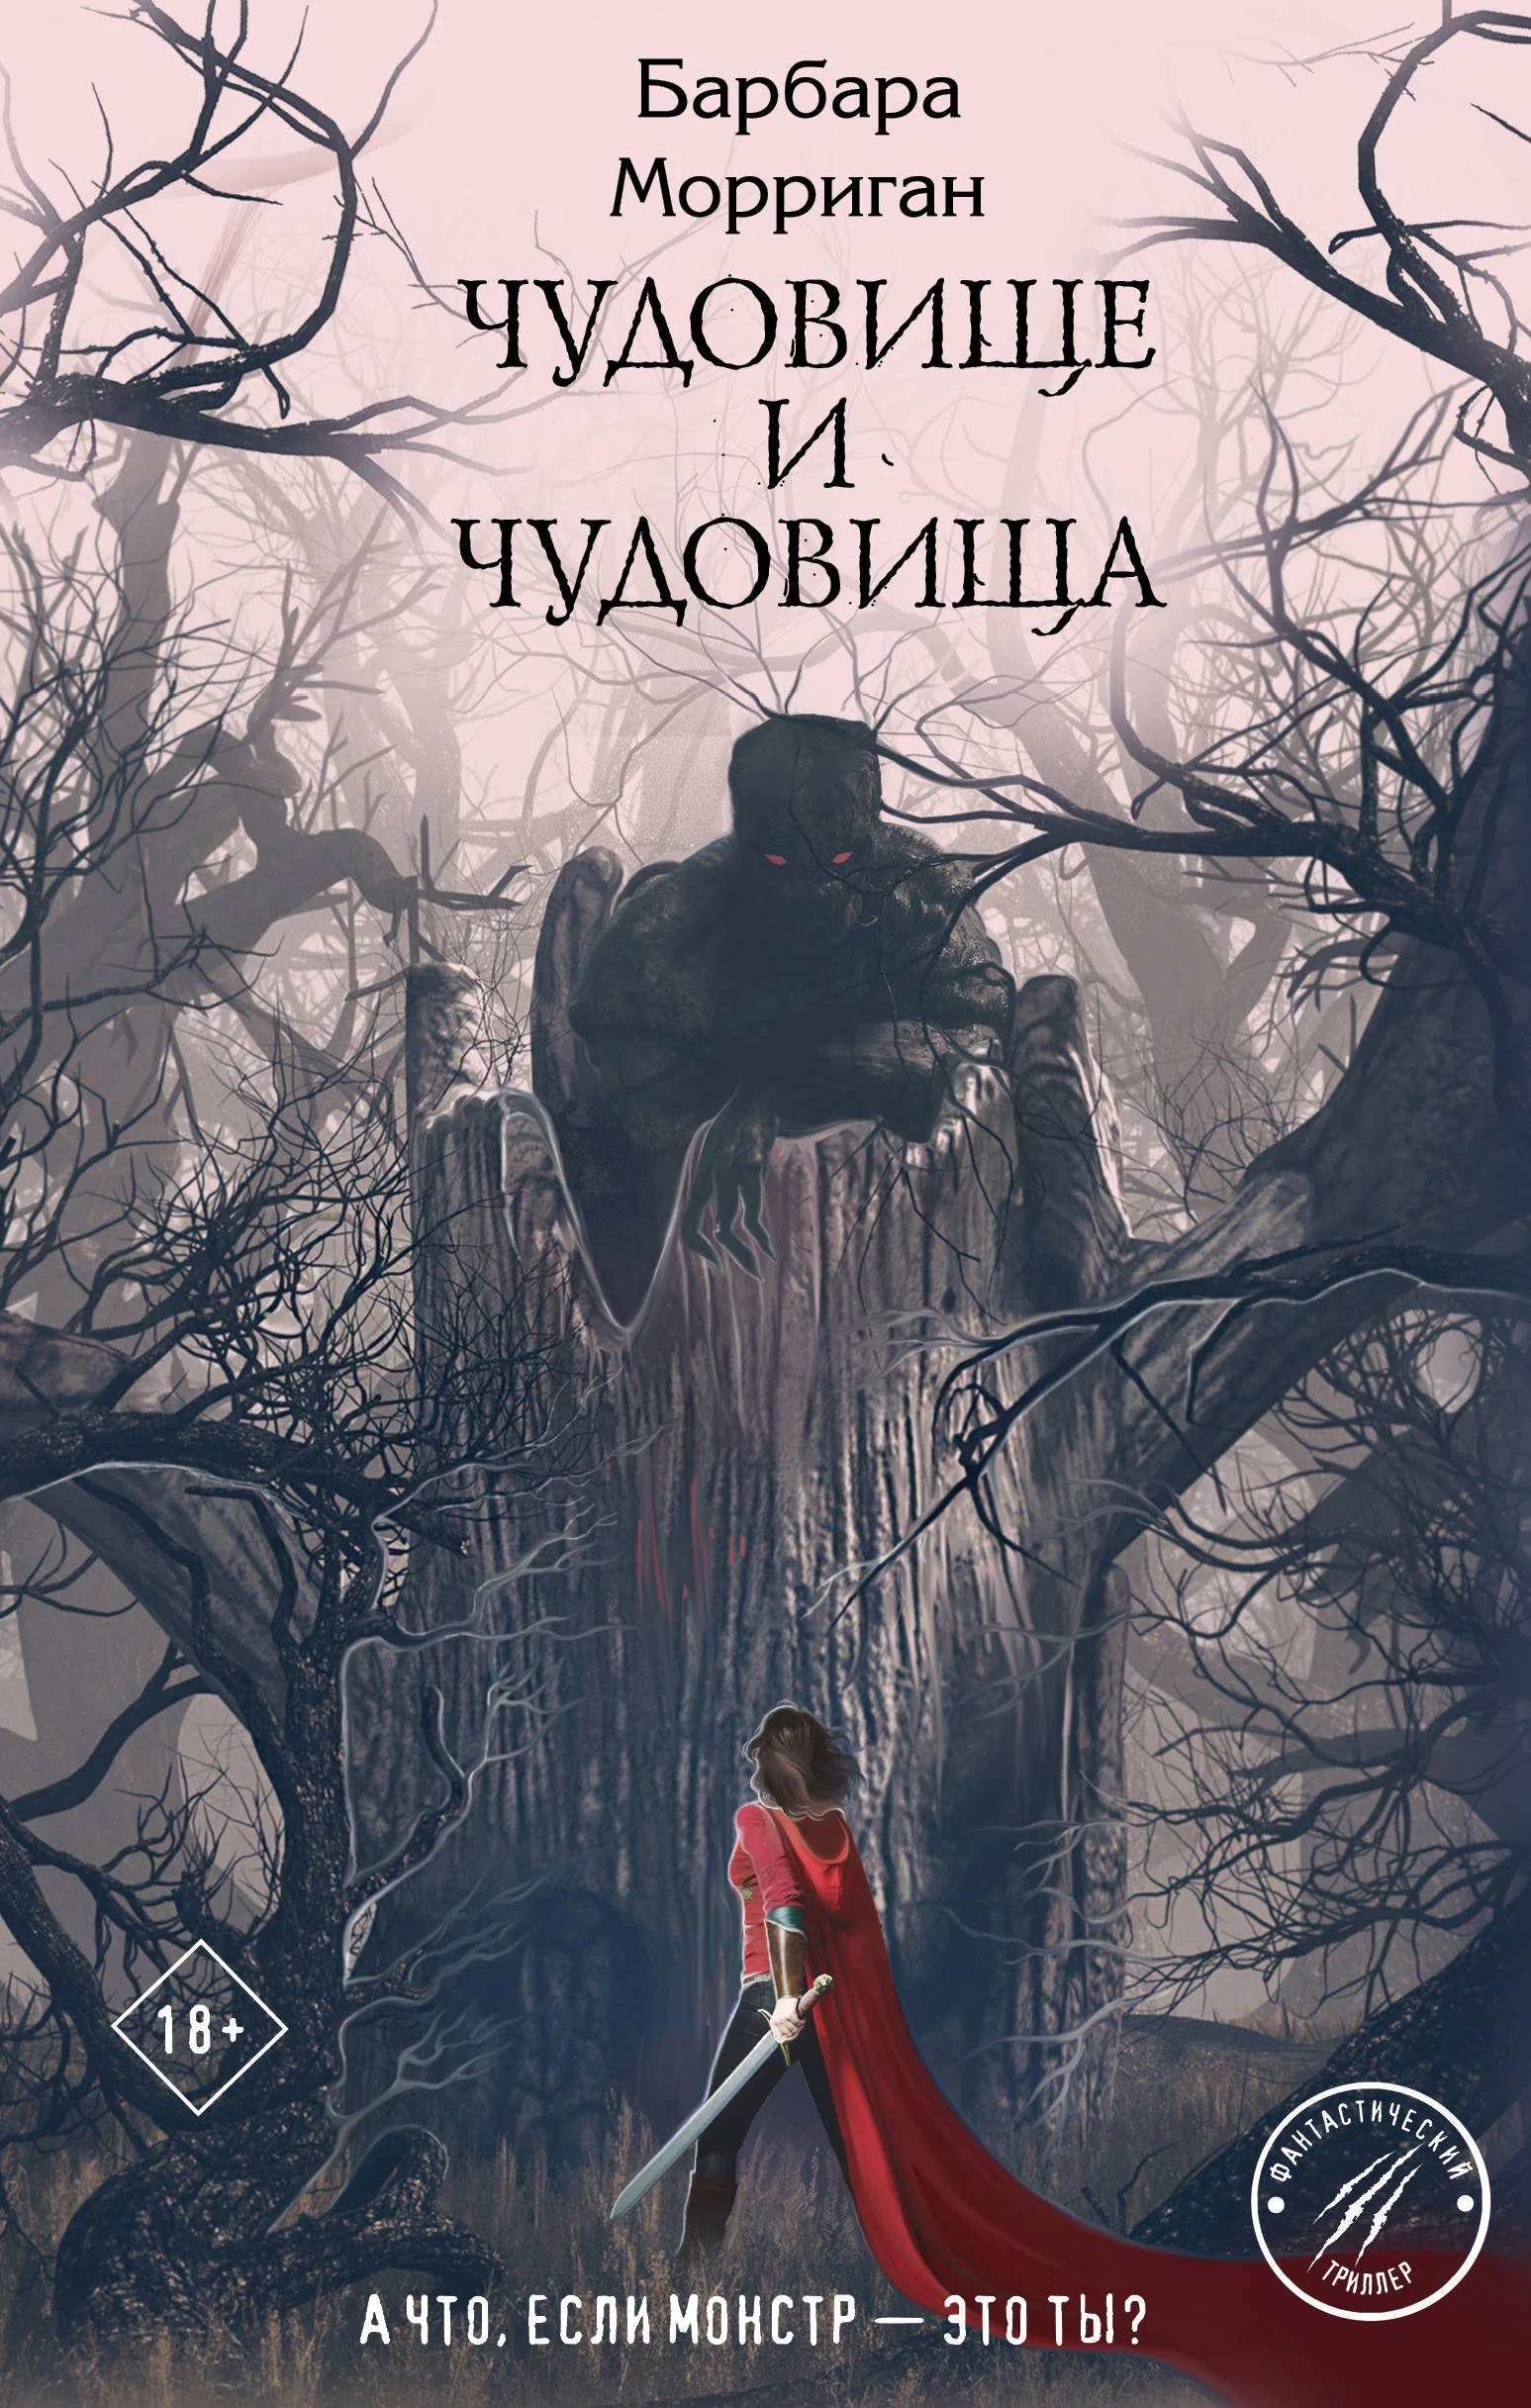 Новая волна: яркие русскоязычные авторы, пишущие фантастику и фэнтези - фото 9